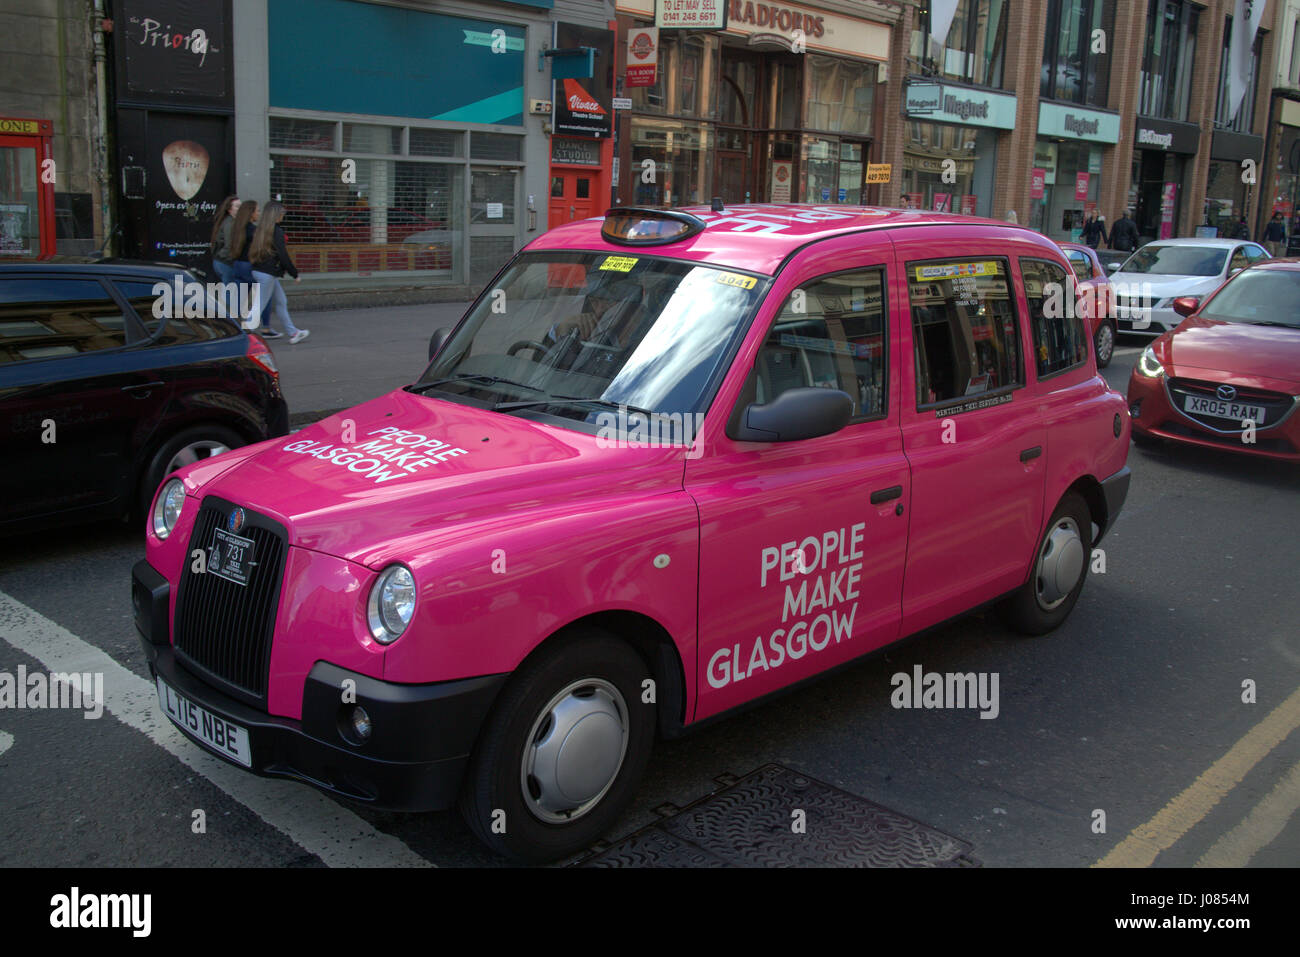 Menschen machen Glasgow rosa Taxi Taxi auf der Straße in Schottland Stockfoto